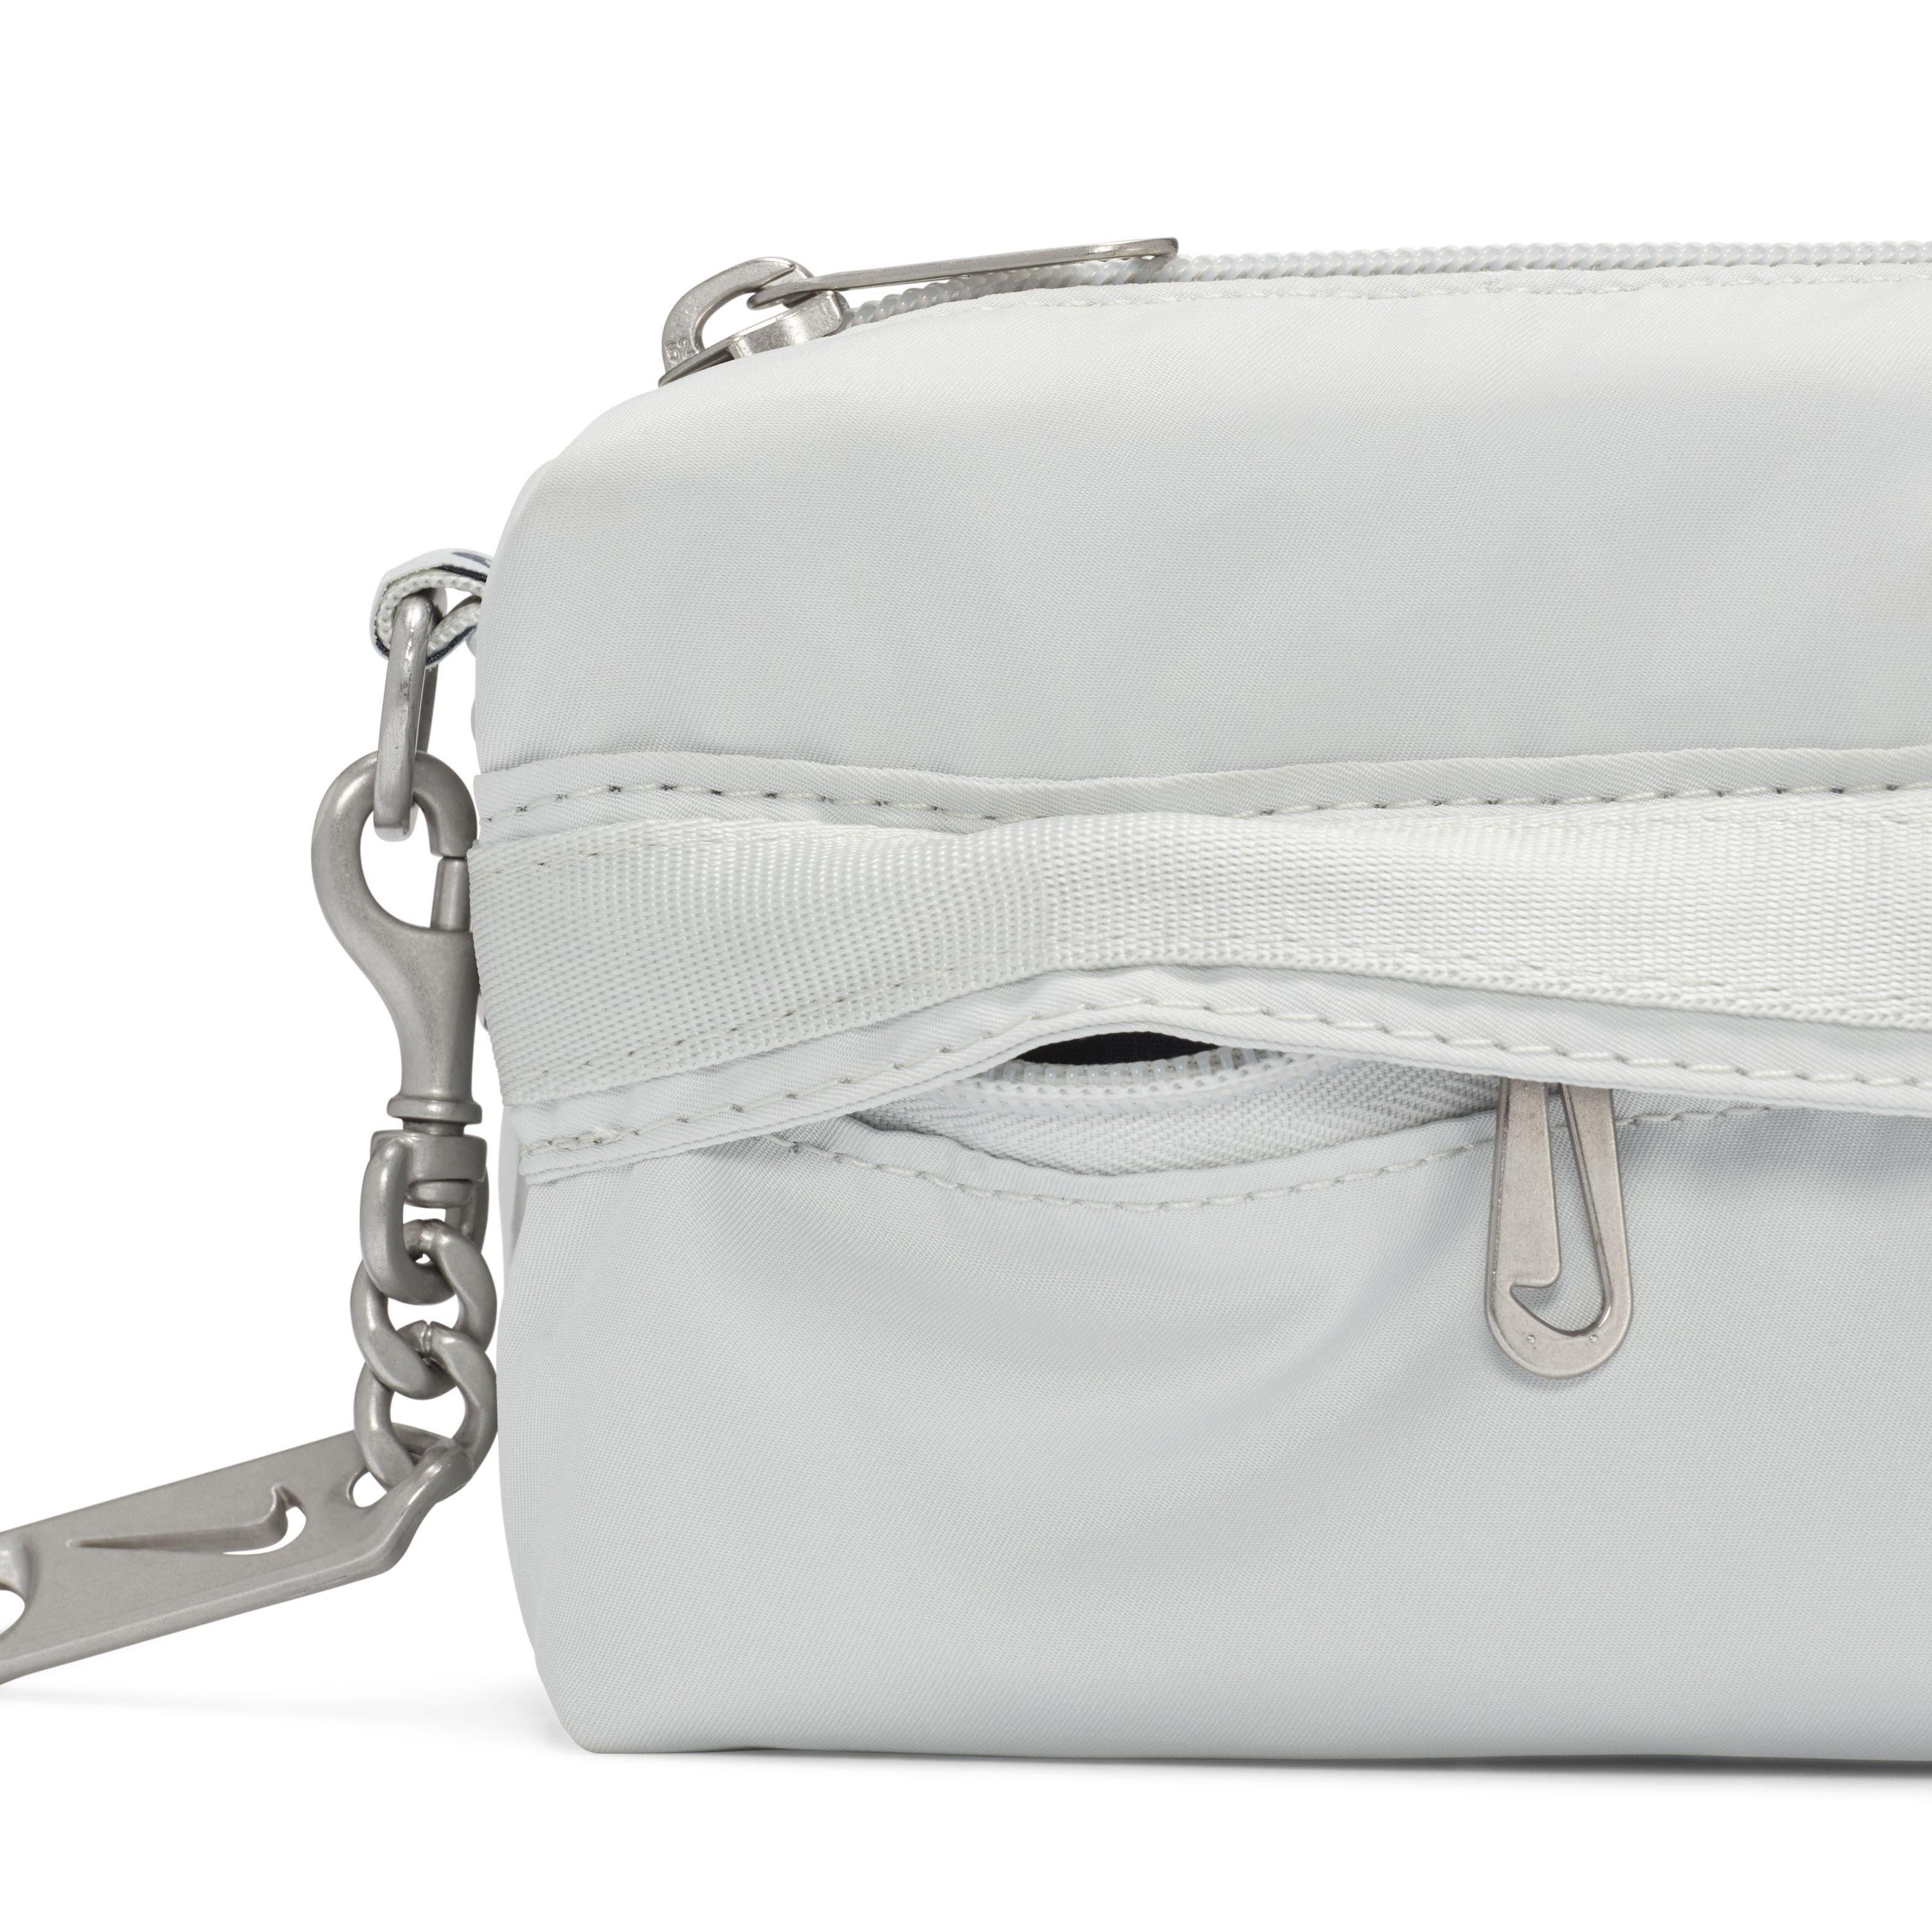 Cuti-Trip 假日旅行- ✓Nike Futura Luxe Crossbody Bag 购买链接